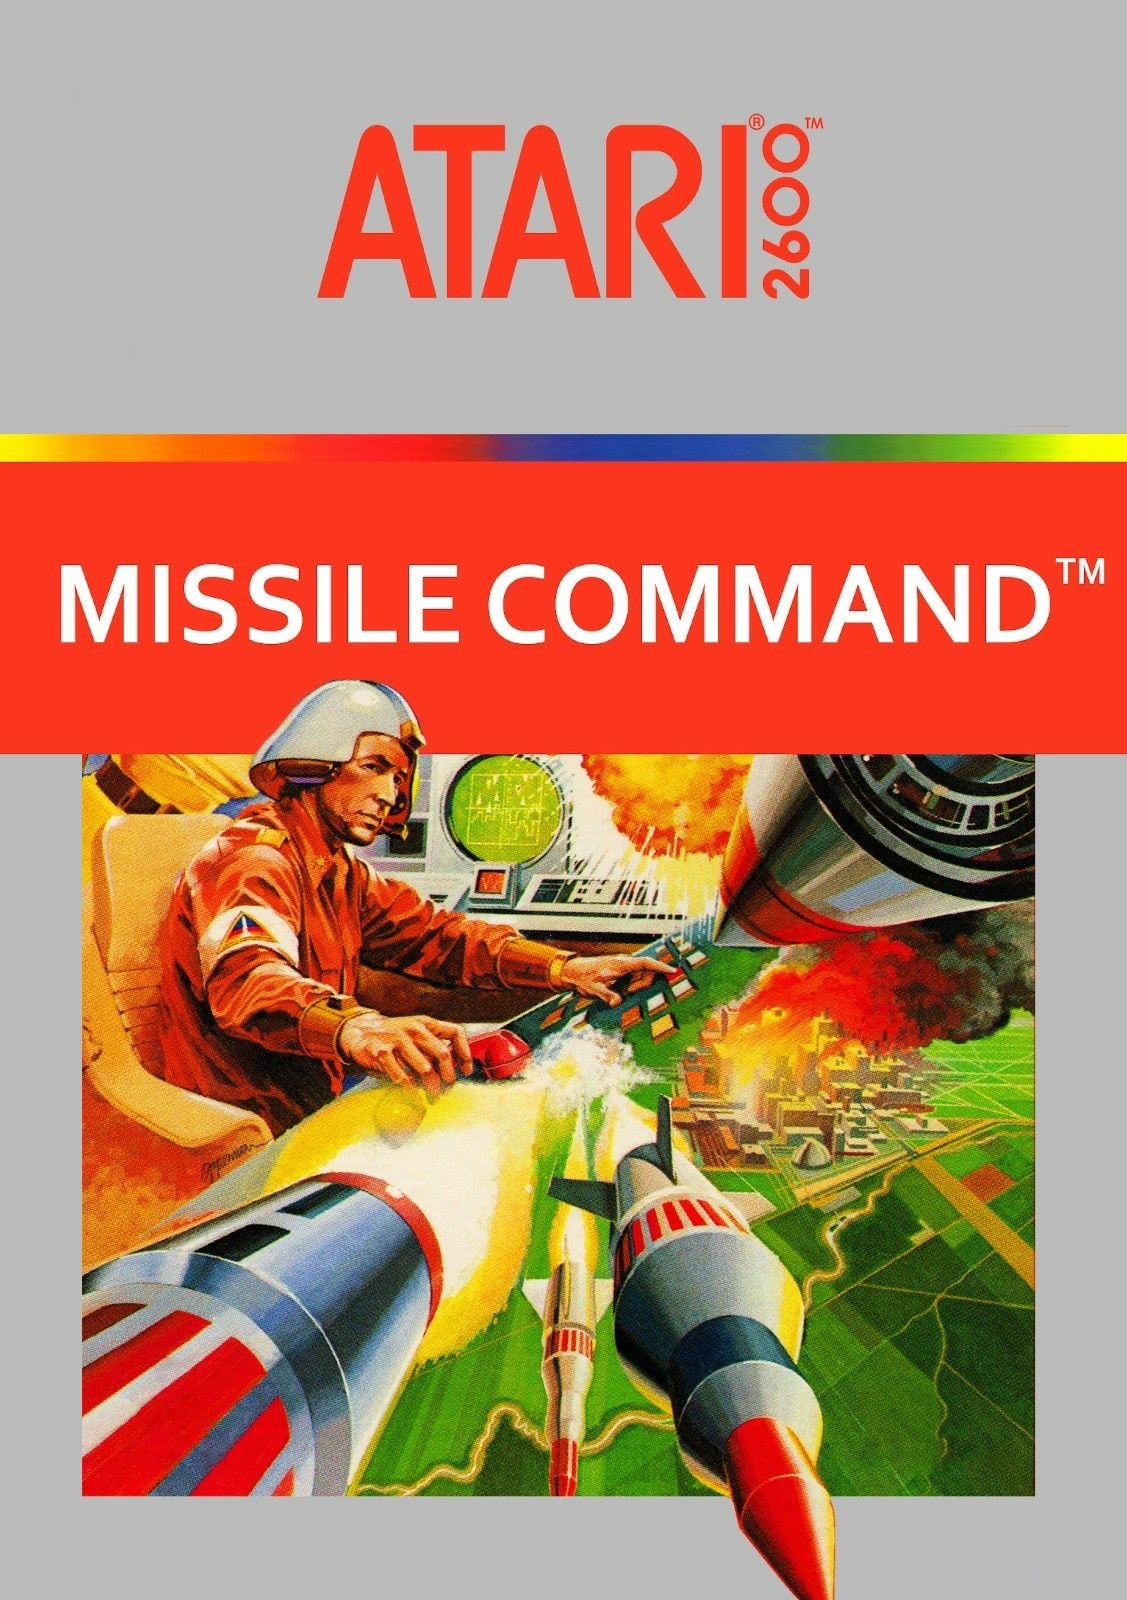 atari missile command